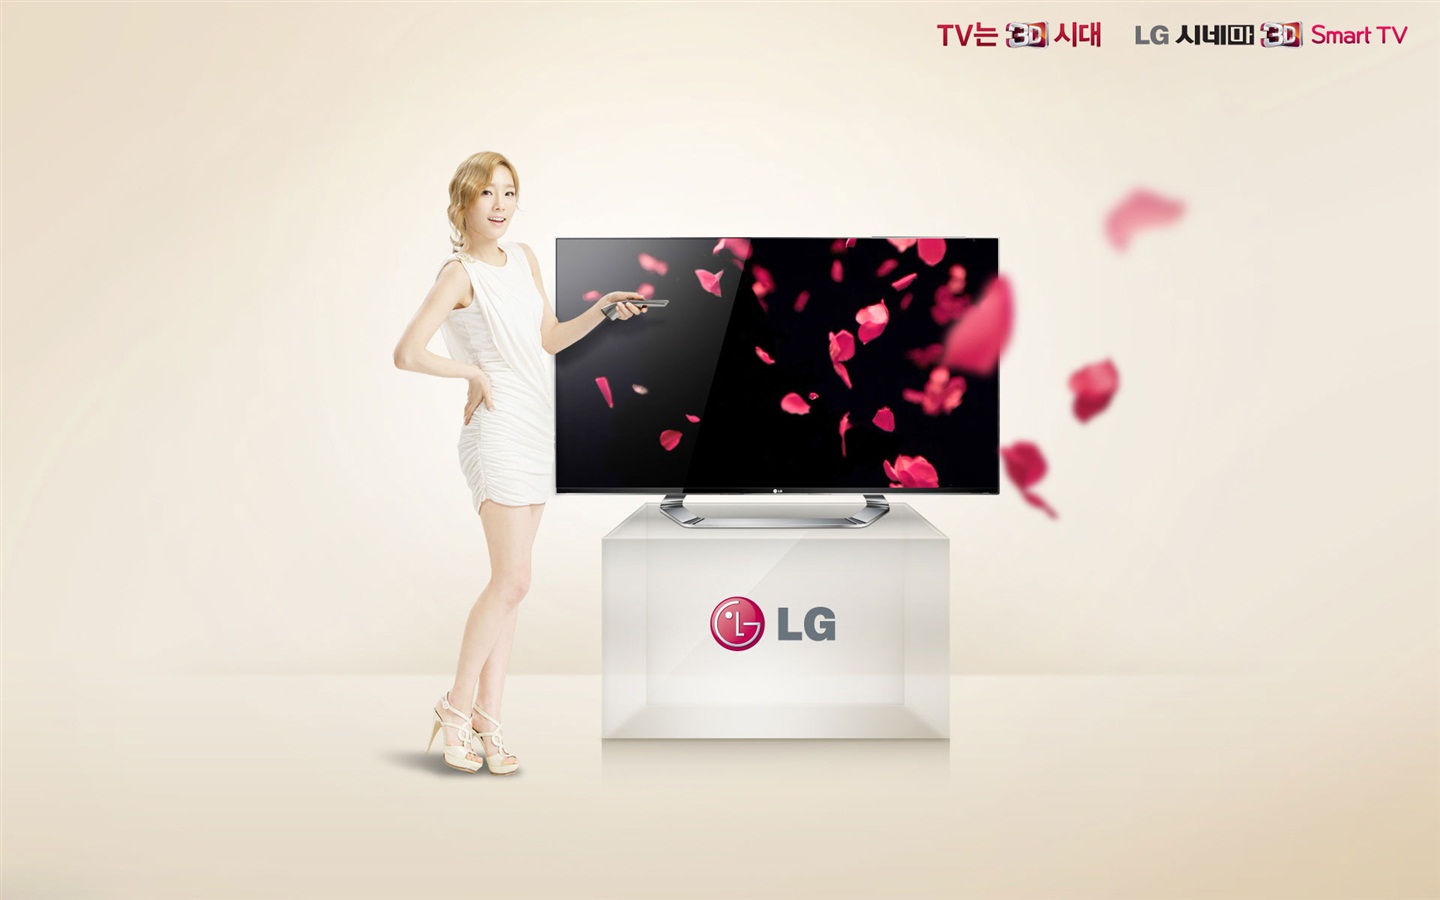 少女时代 ACE 和 LG 广告代言 高清壁纸14 - 1440x900